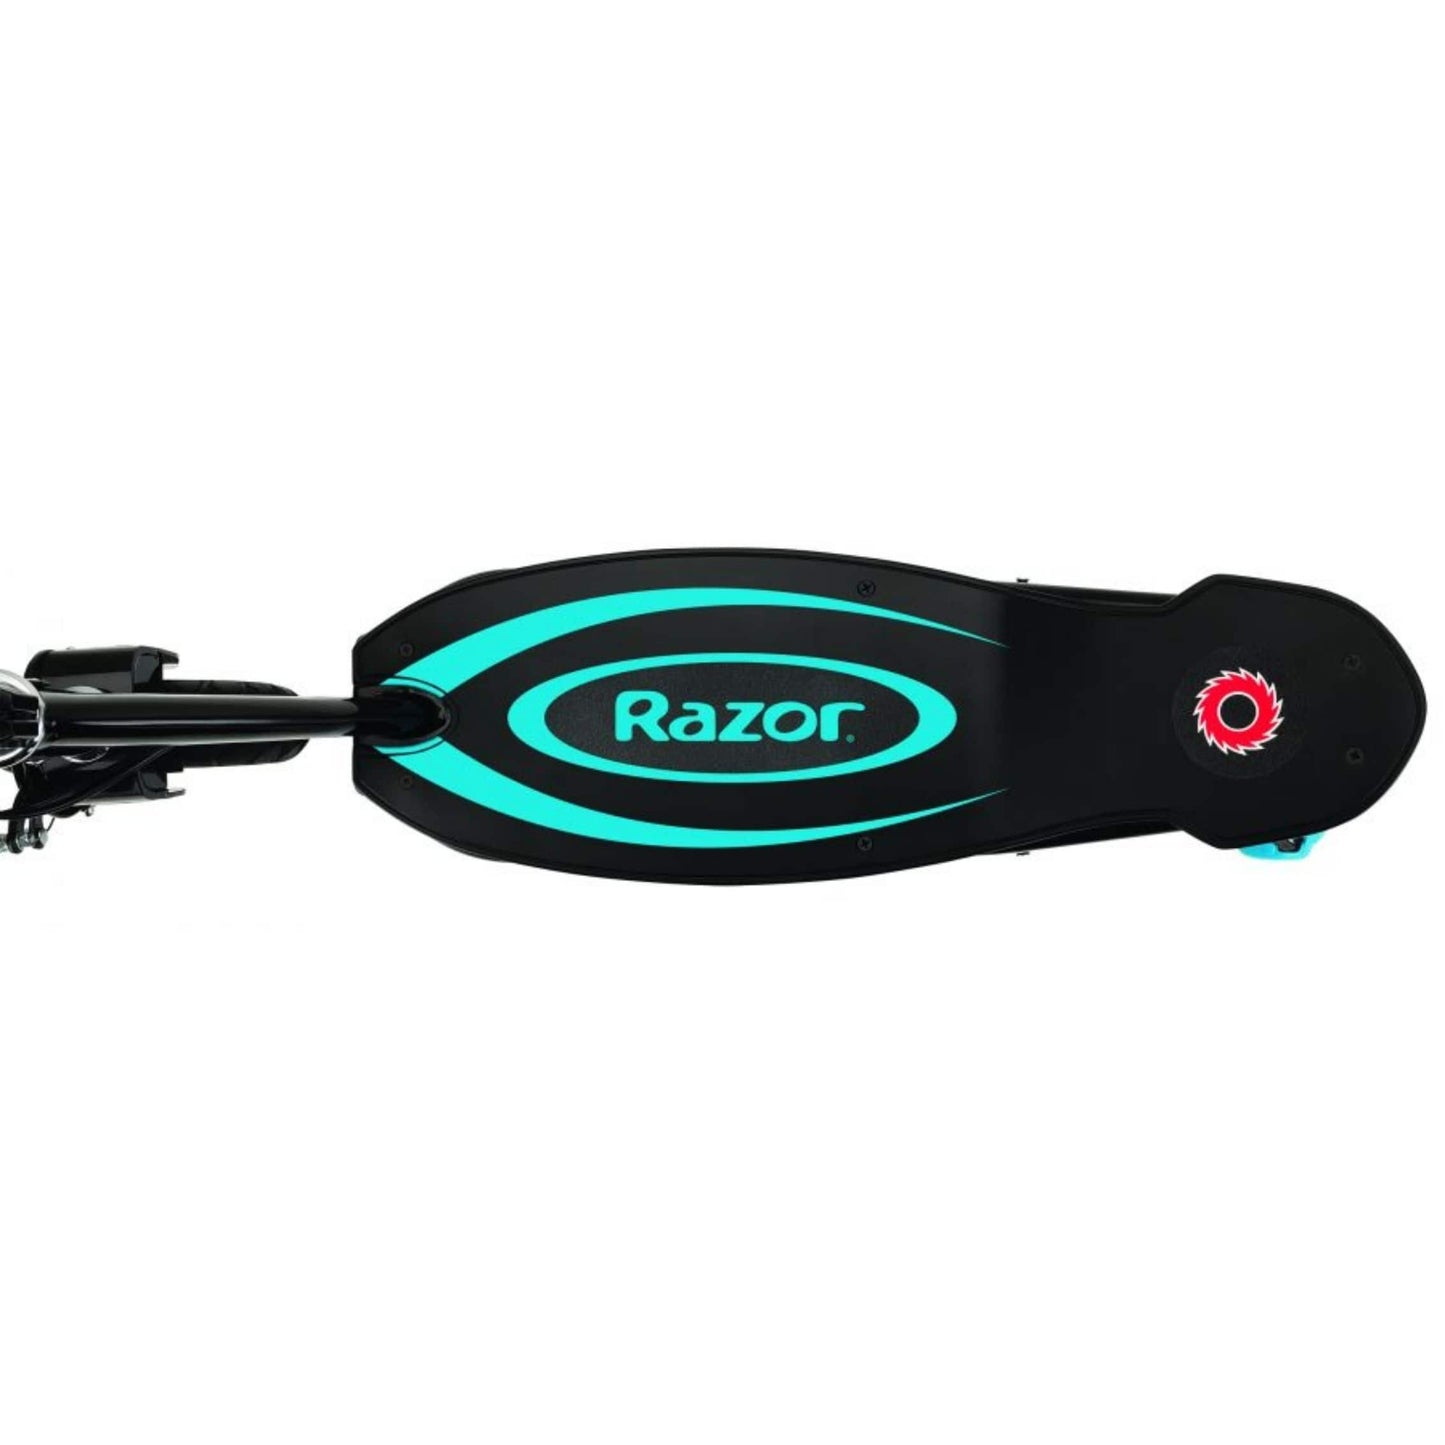 Razor Power Core E100 Electric Scooter